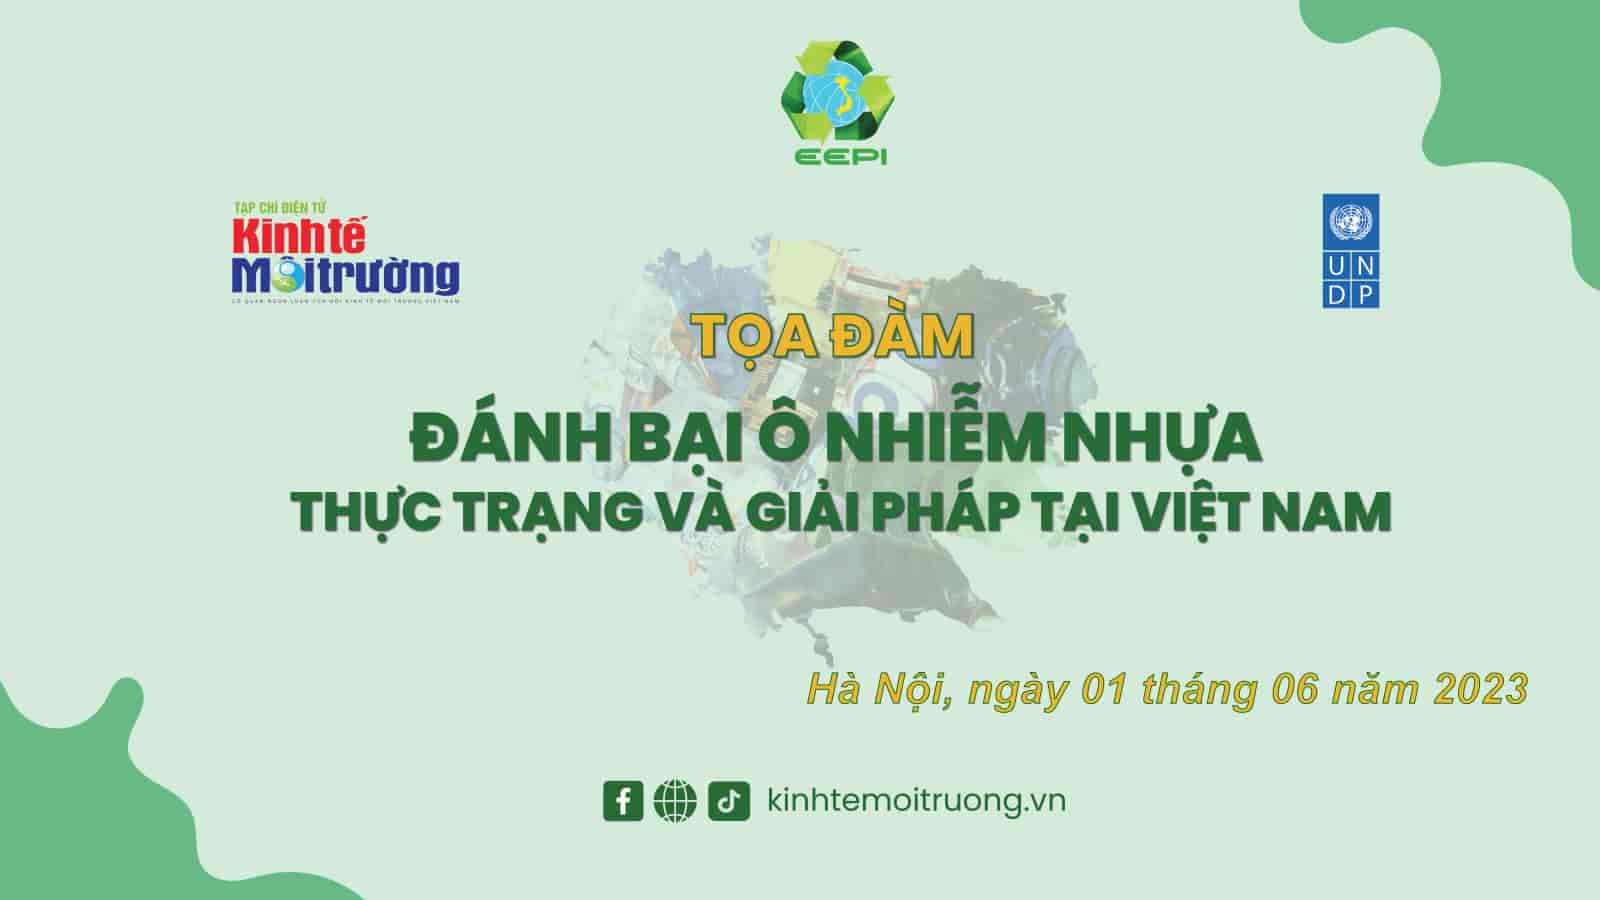 Sắp diễn ra Tọa đàm "Đánh bại ô nhiễm nhựa - Thực trạng và giải pháp tại Việt Nam"